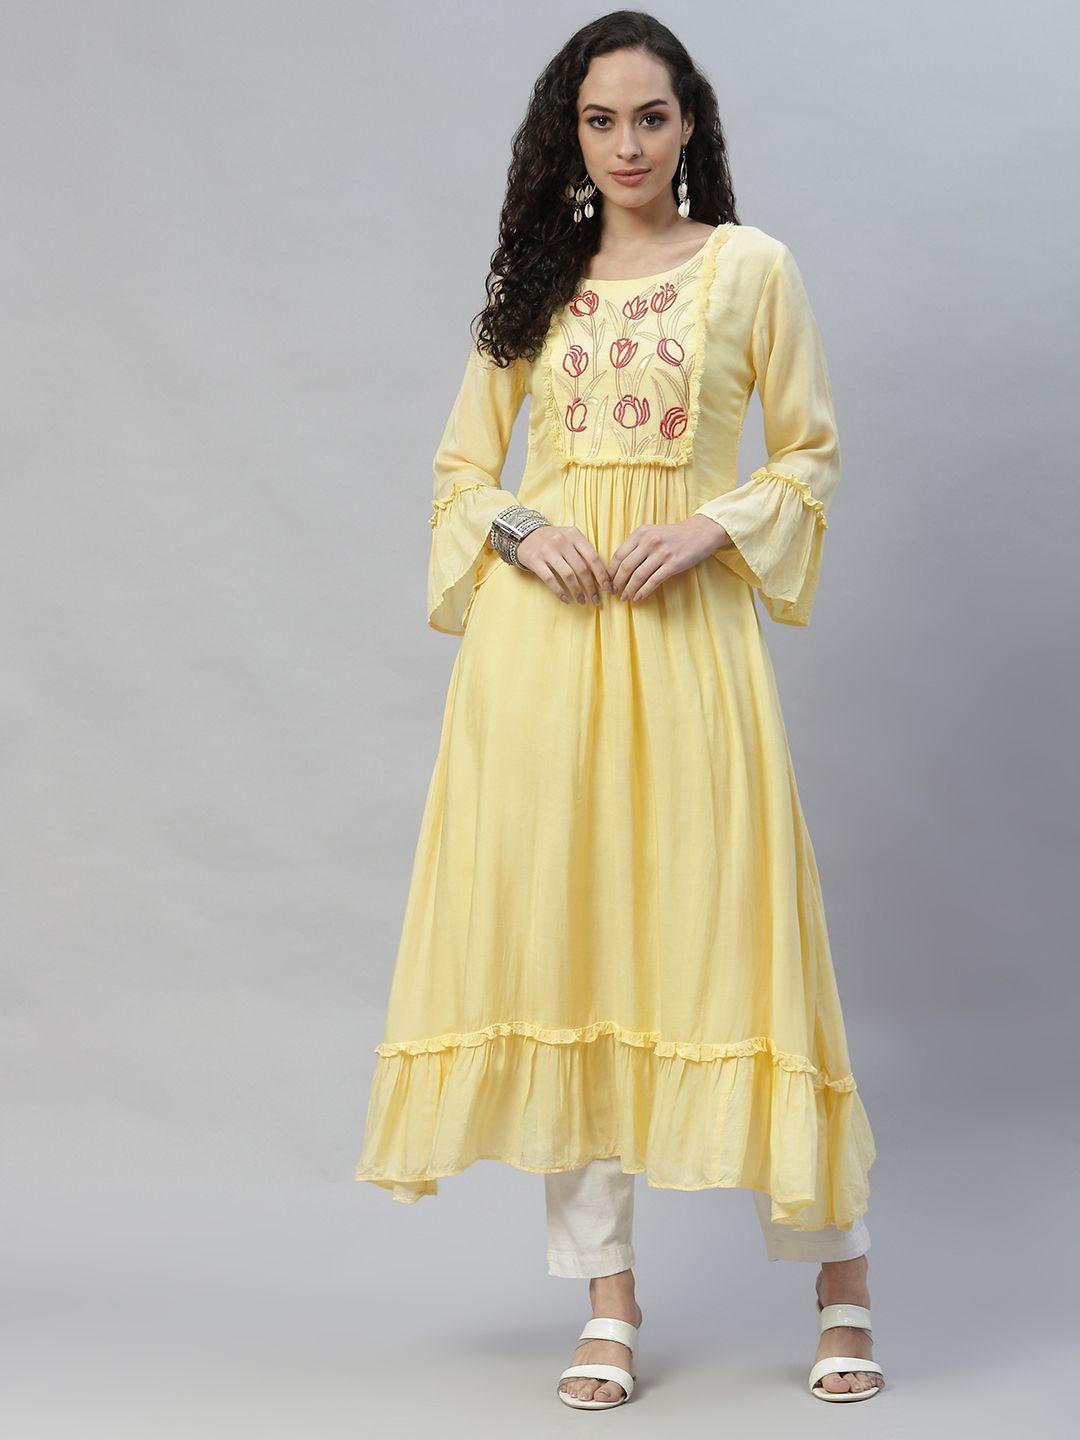 laakhi women yellow & red ethnic motifs printed flared sleeves kurta